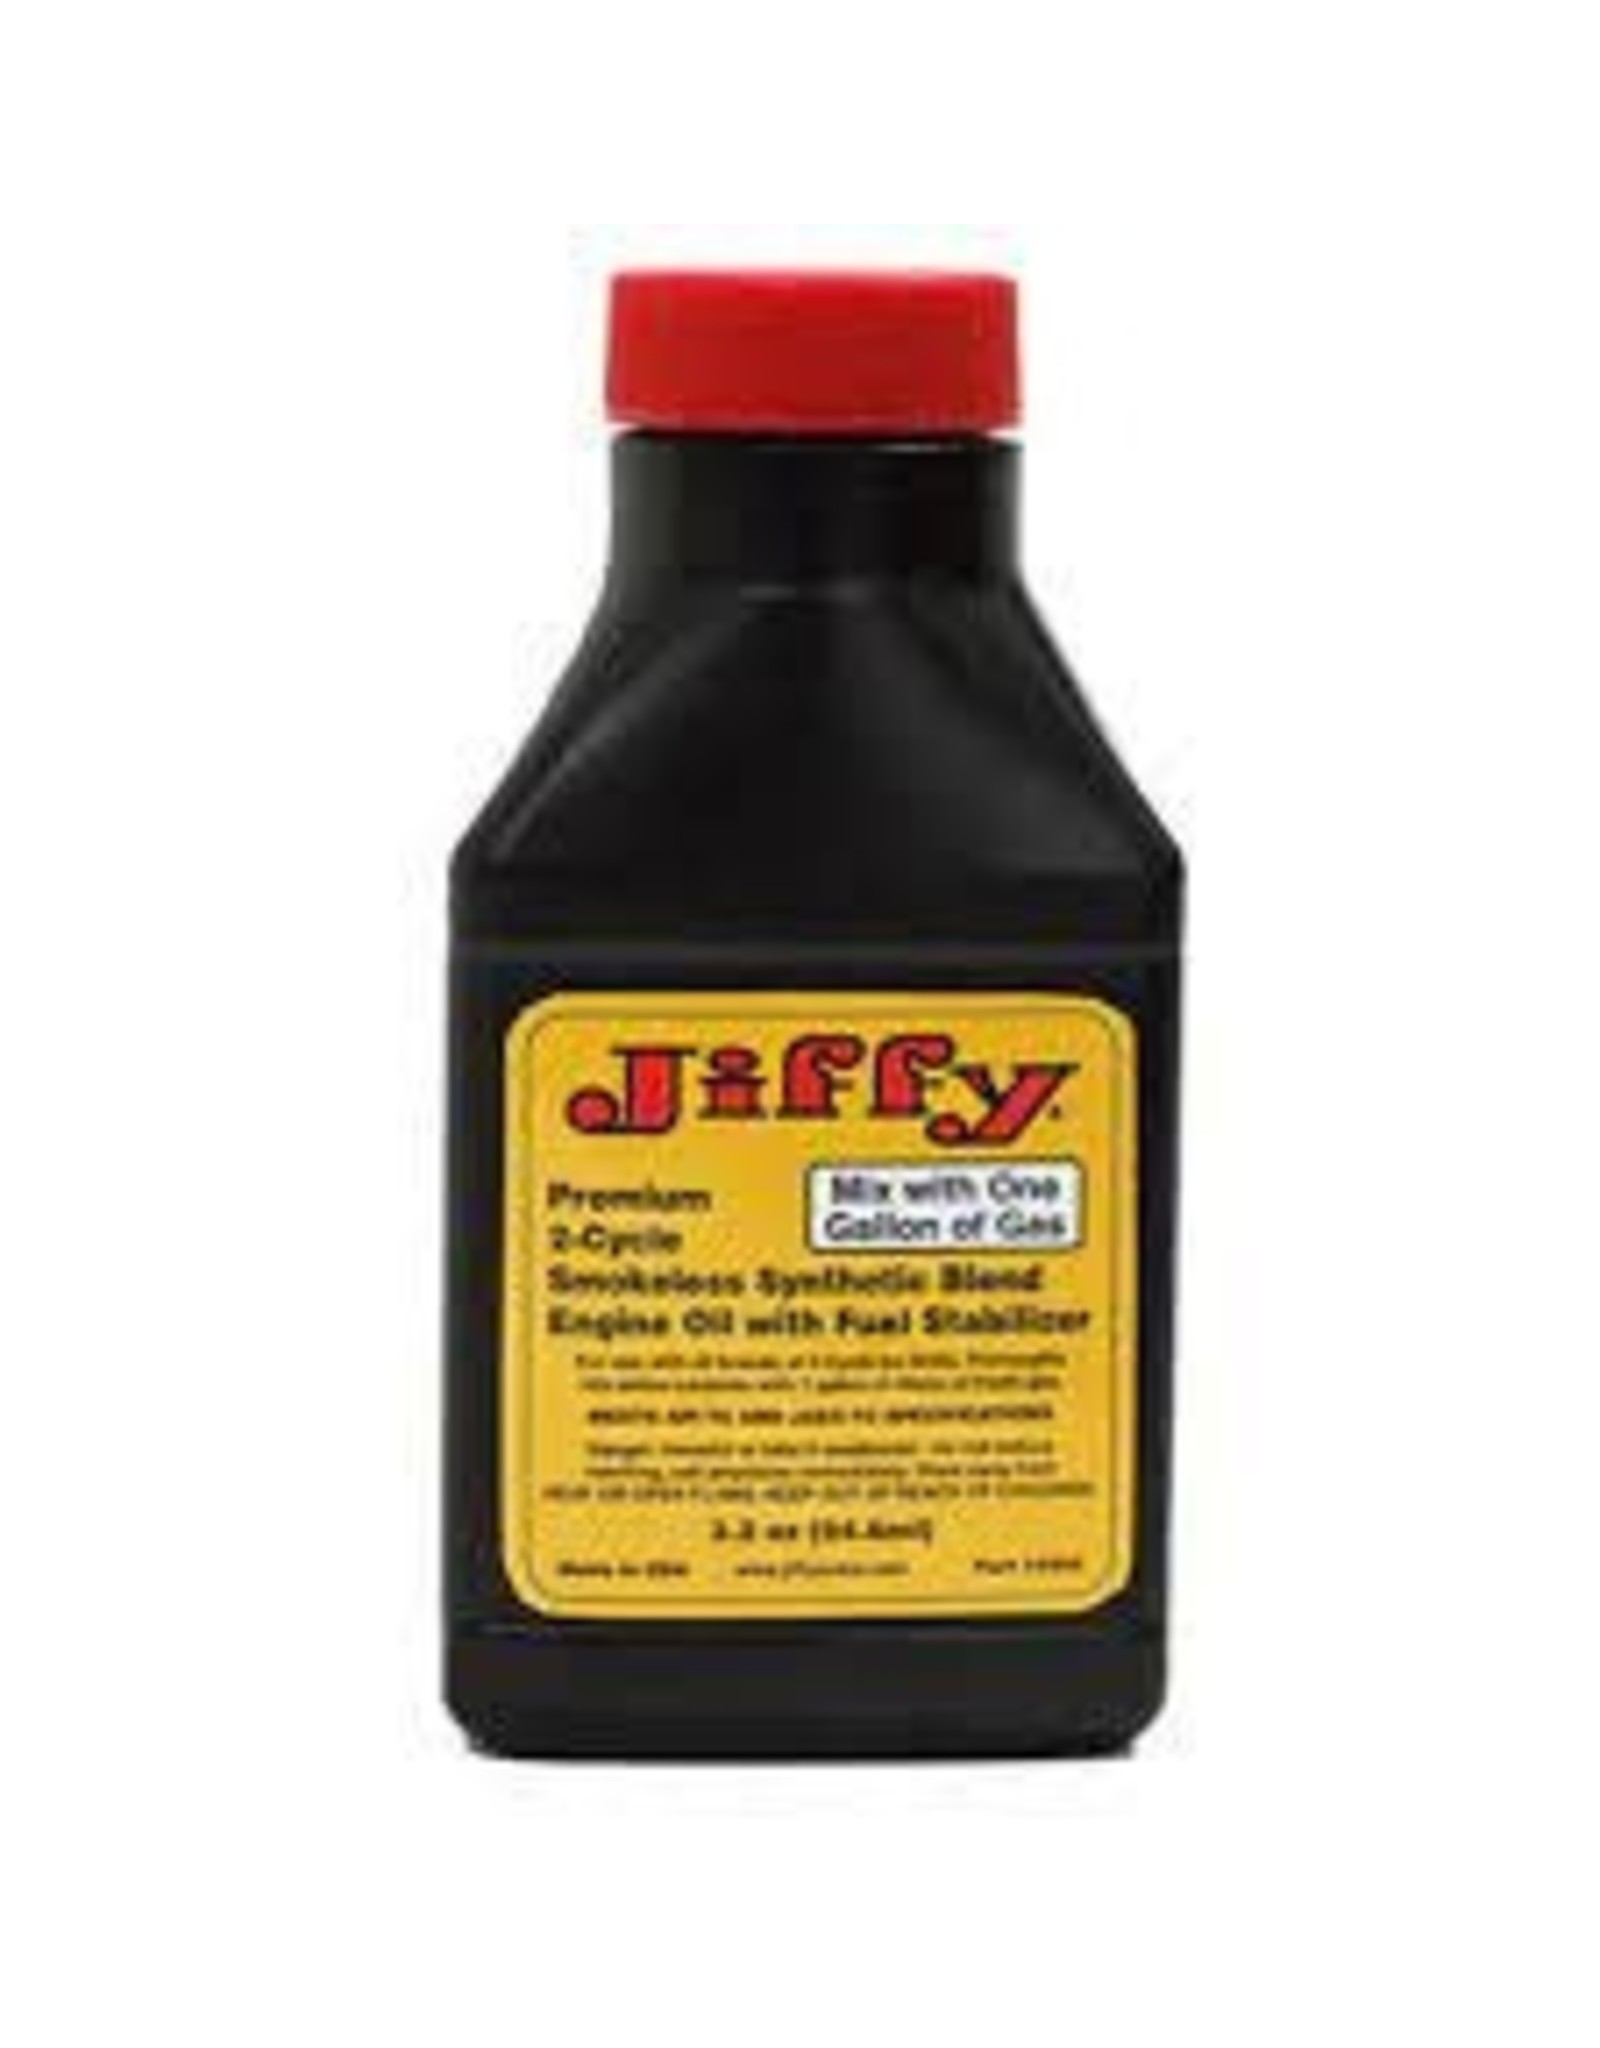 JIFFY JIFFY PREM SYNTHETIC BLEND 2-CYCLE OIL 3.2oz